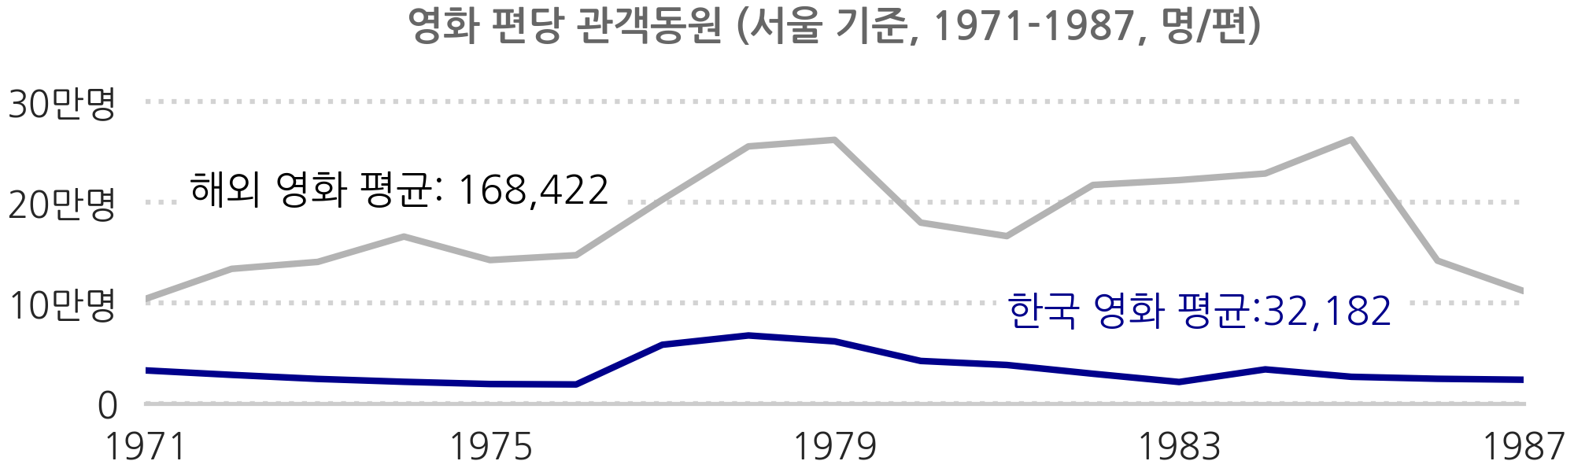 영화 편당 관객동원  해외영화 평균 168,422 한국영화 평균 32,182